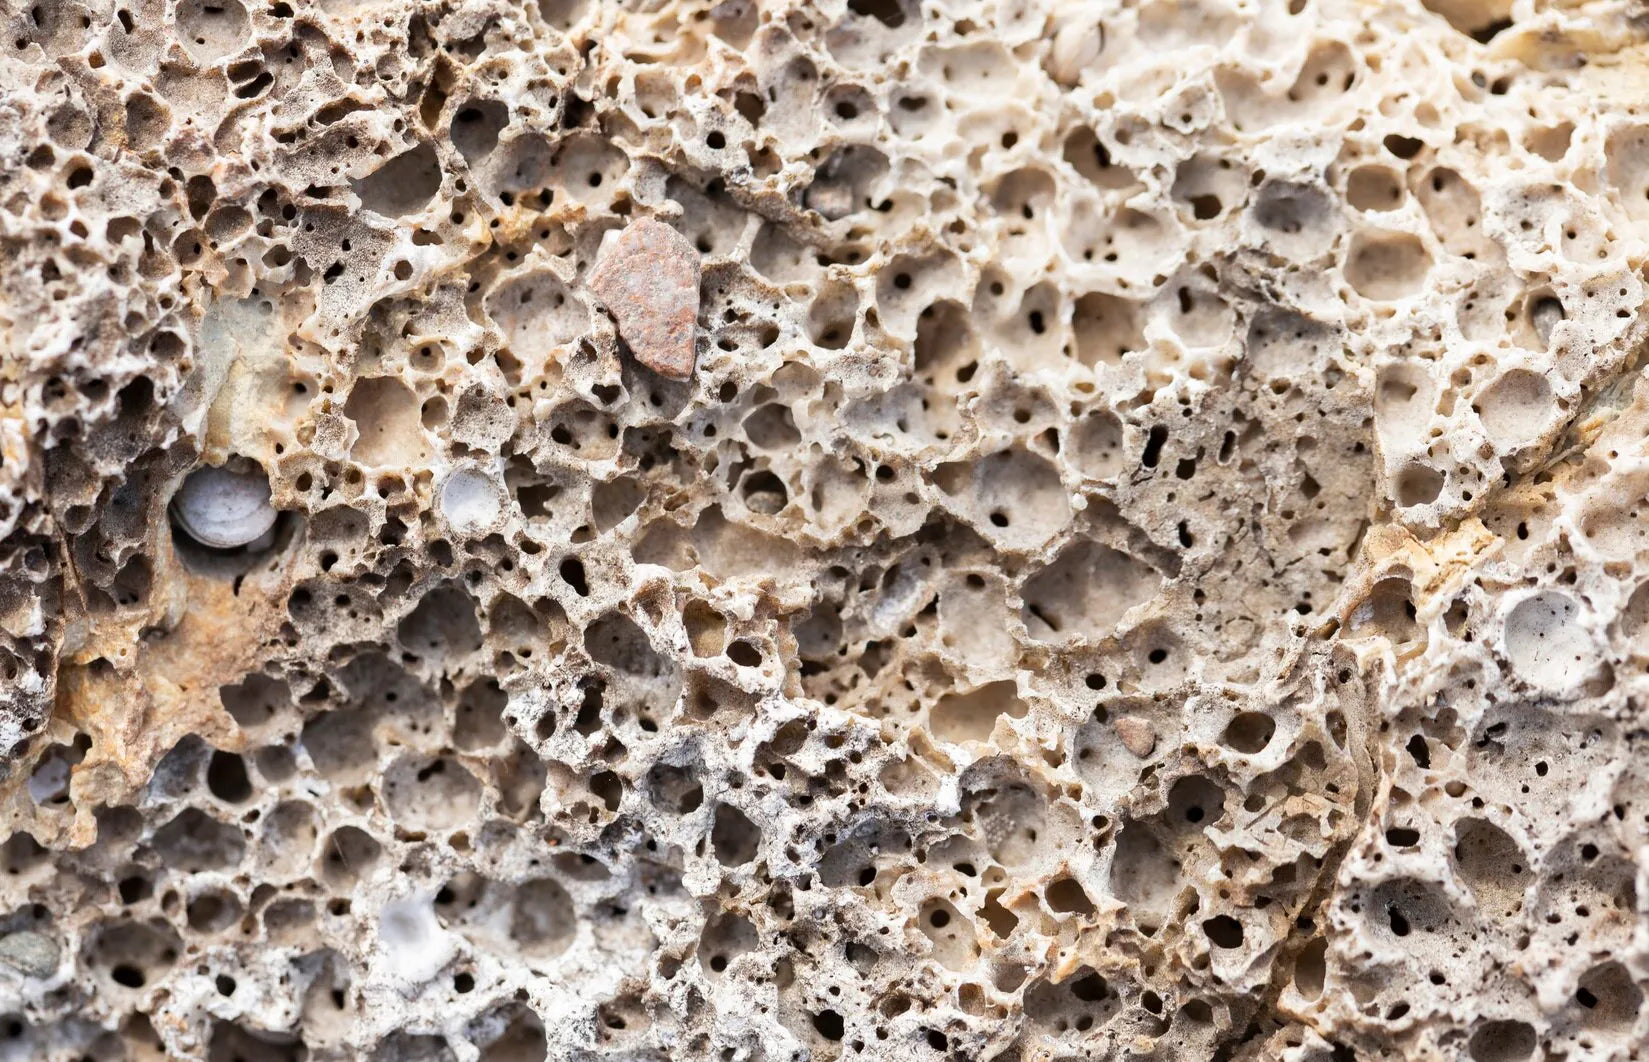 coral-calcium-from-fossilized-corals.webp__PID:bca70d05-e8e9-485a-99ca-5ea6b221ee96